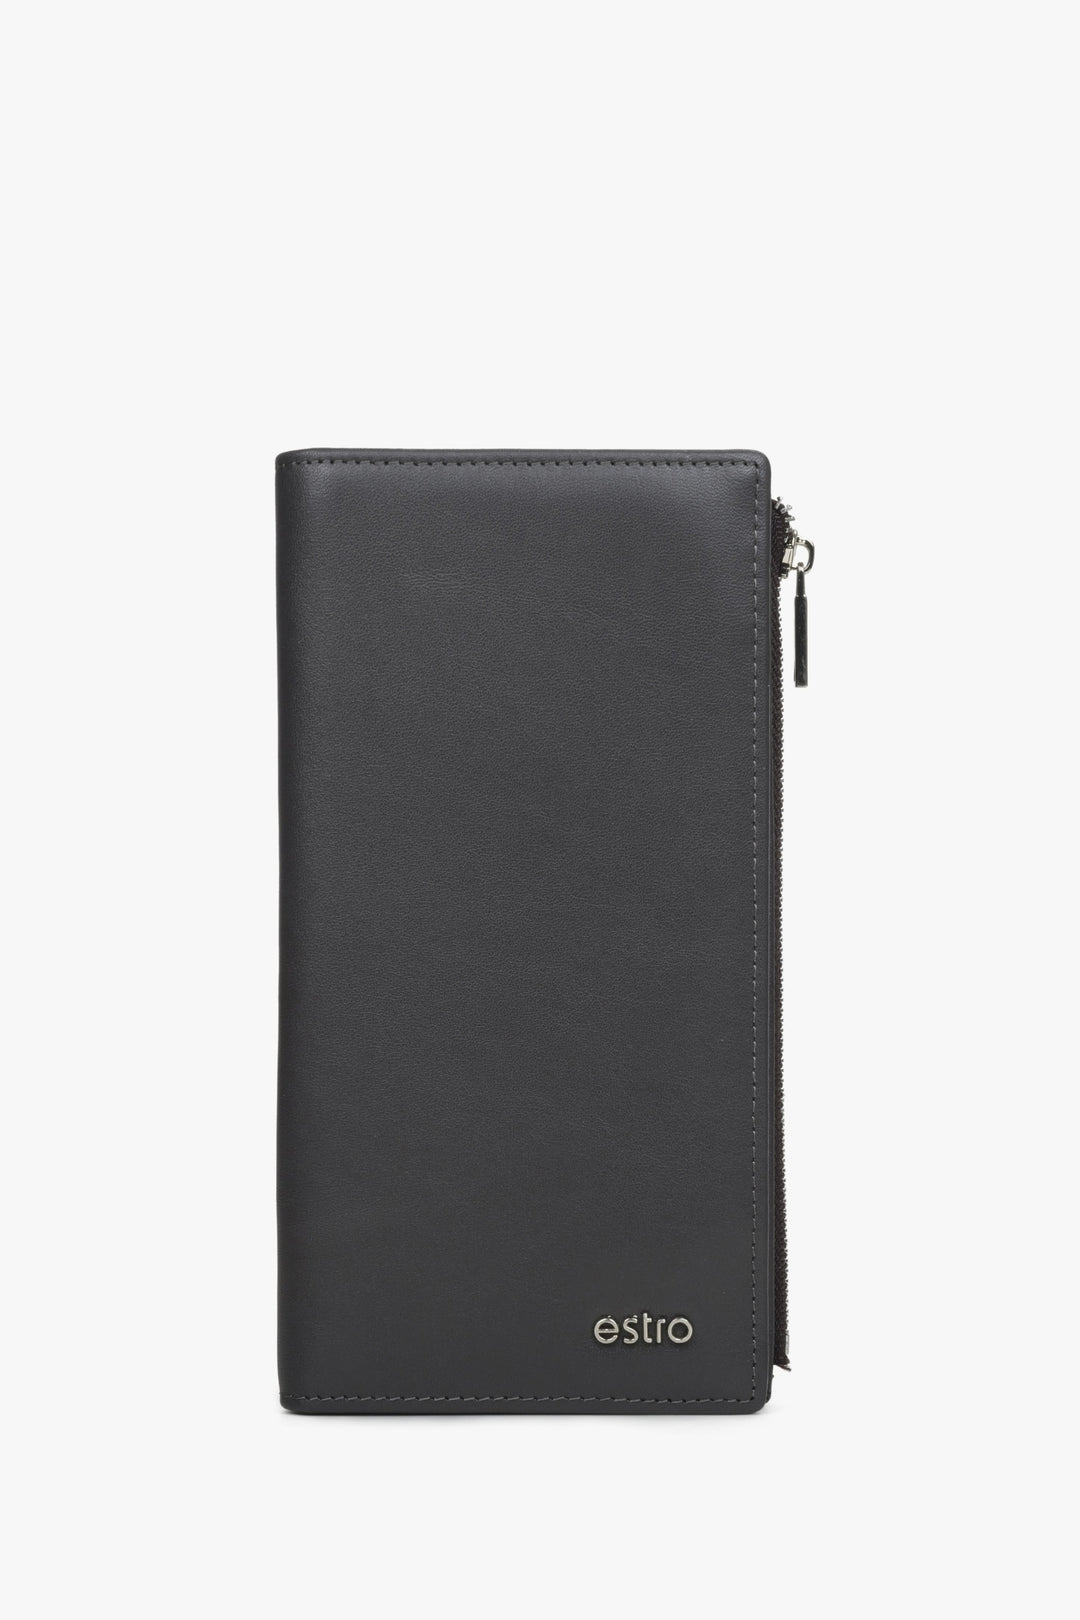 Men's Large Wallet made of Genuine Black Leather Estro ER00114460.